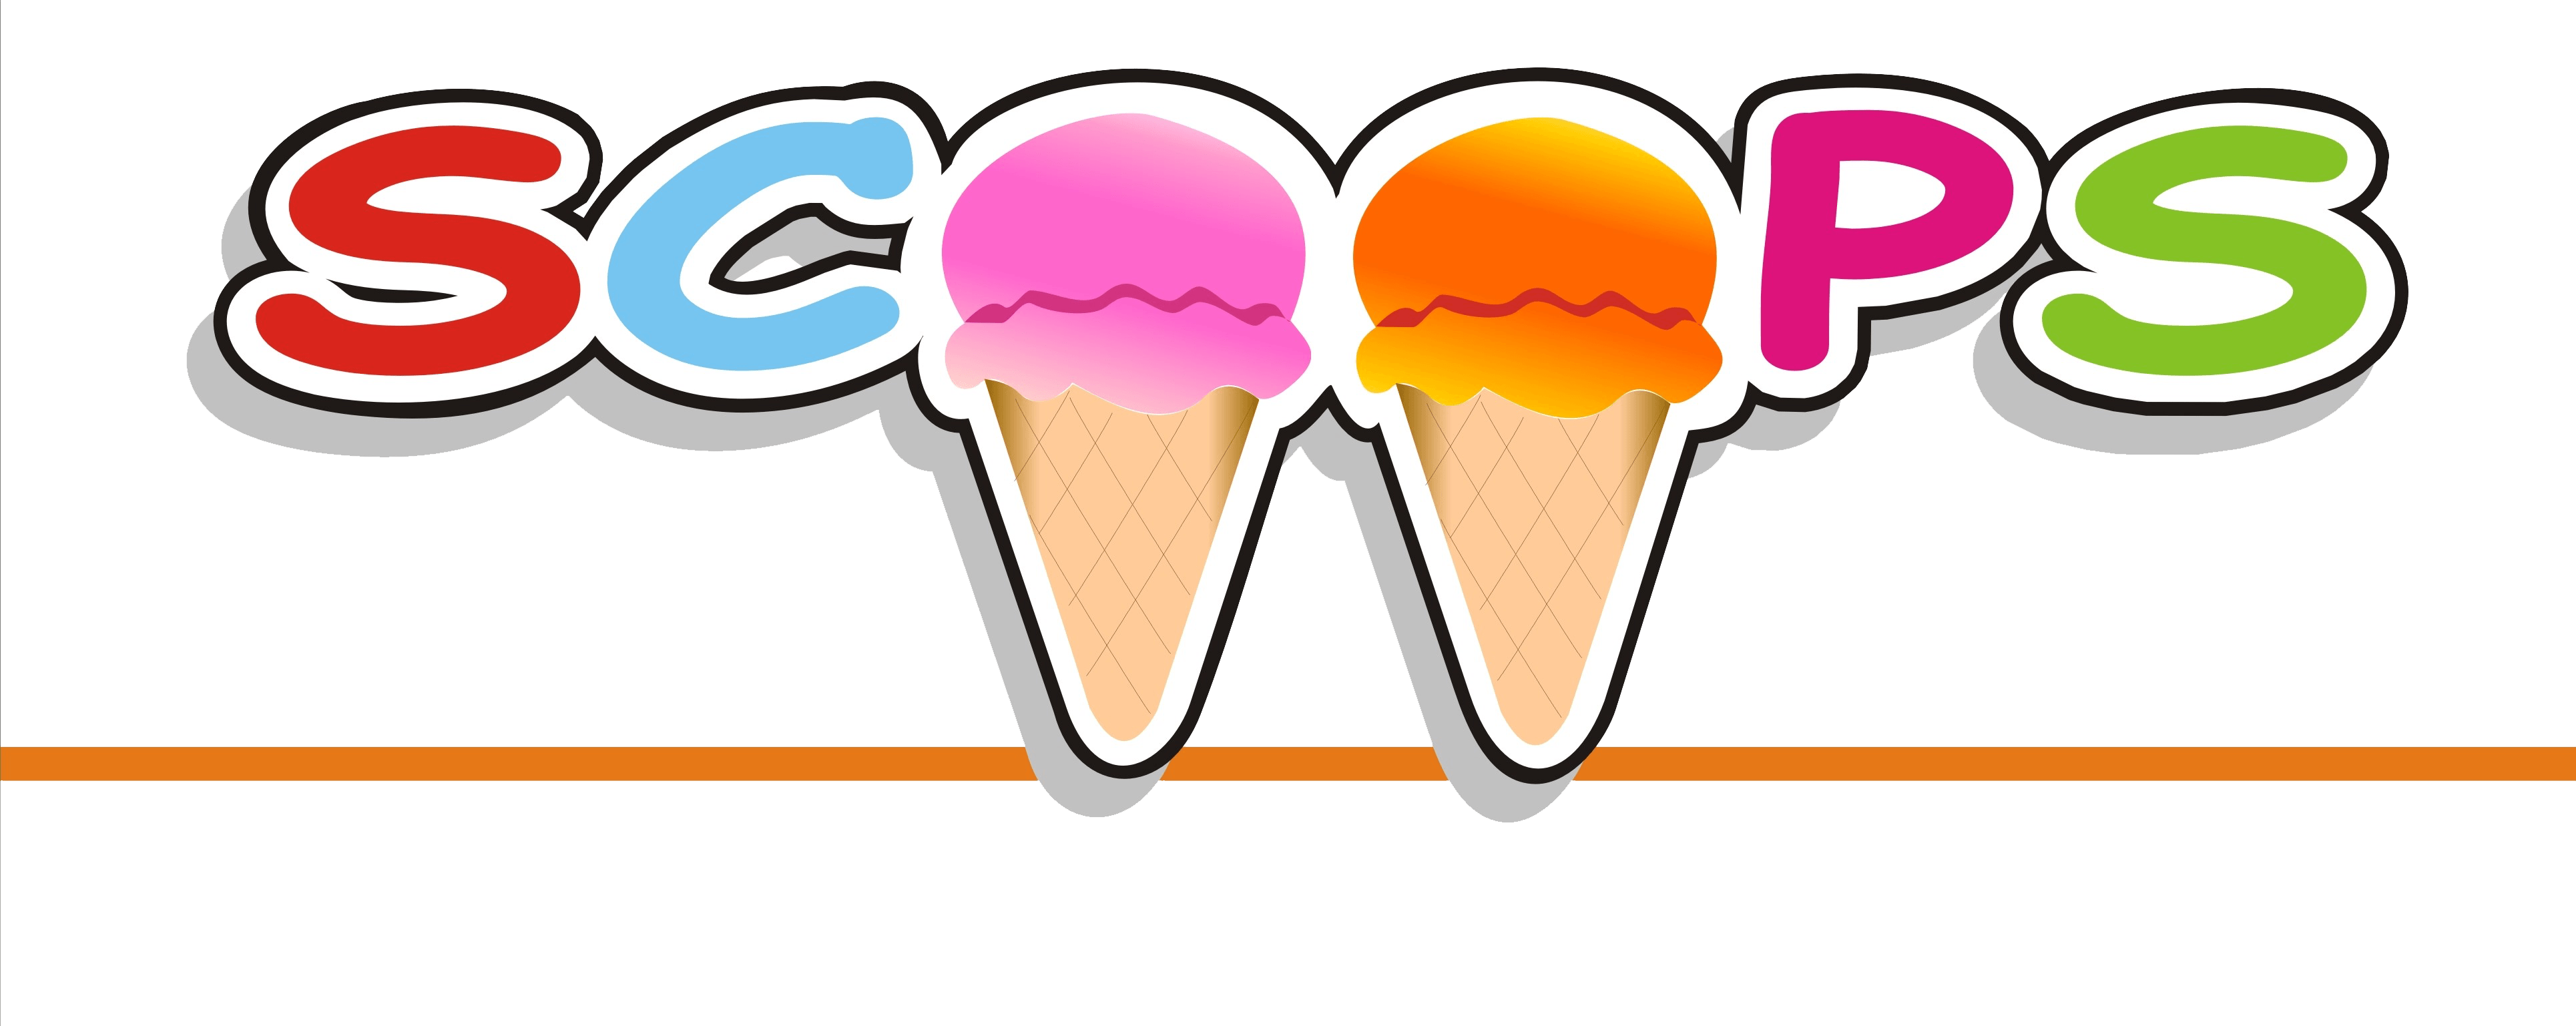 Scoops Ice Cream Logo - The Original Scoops | Ice Ceam, Cakes & Cappucinos in Bridgeport ...